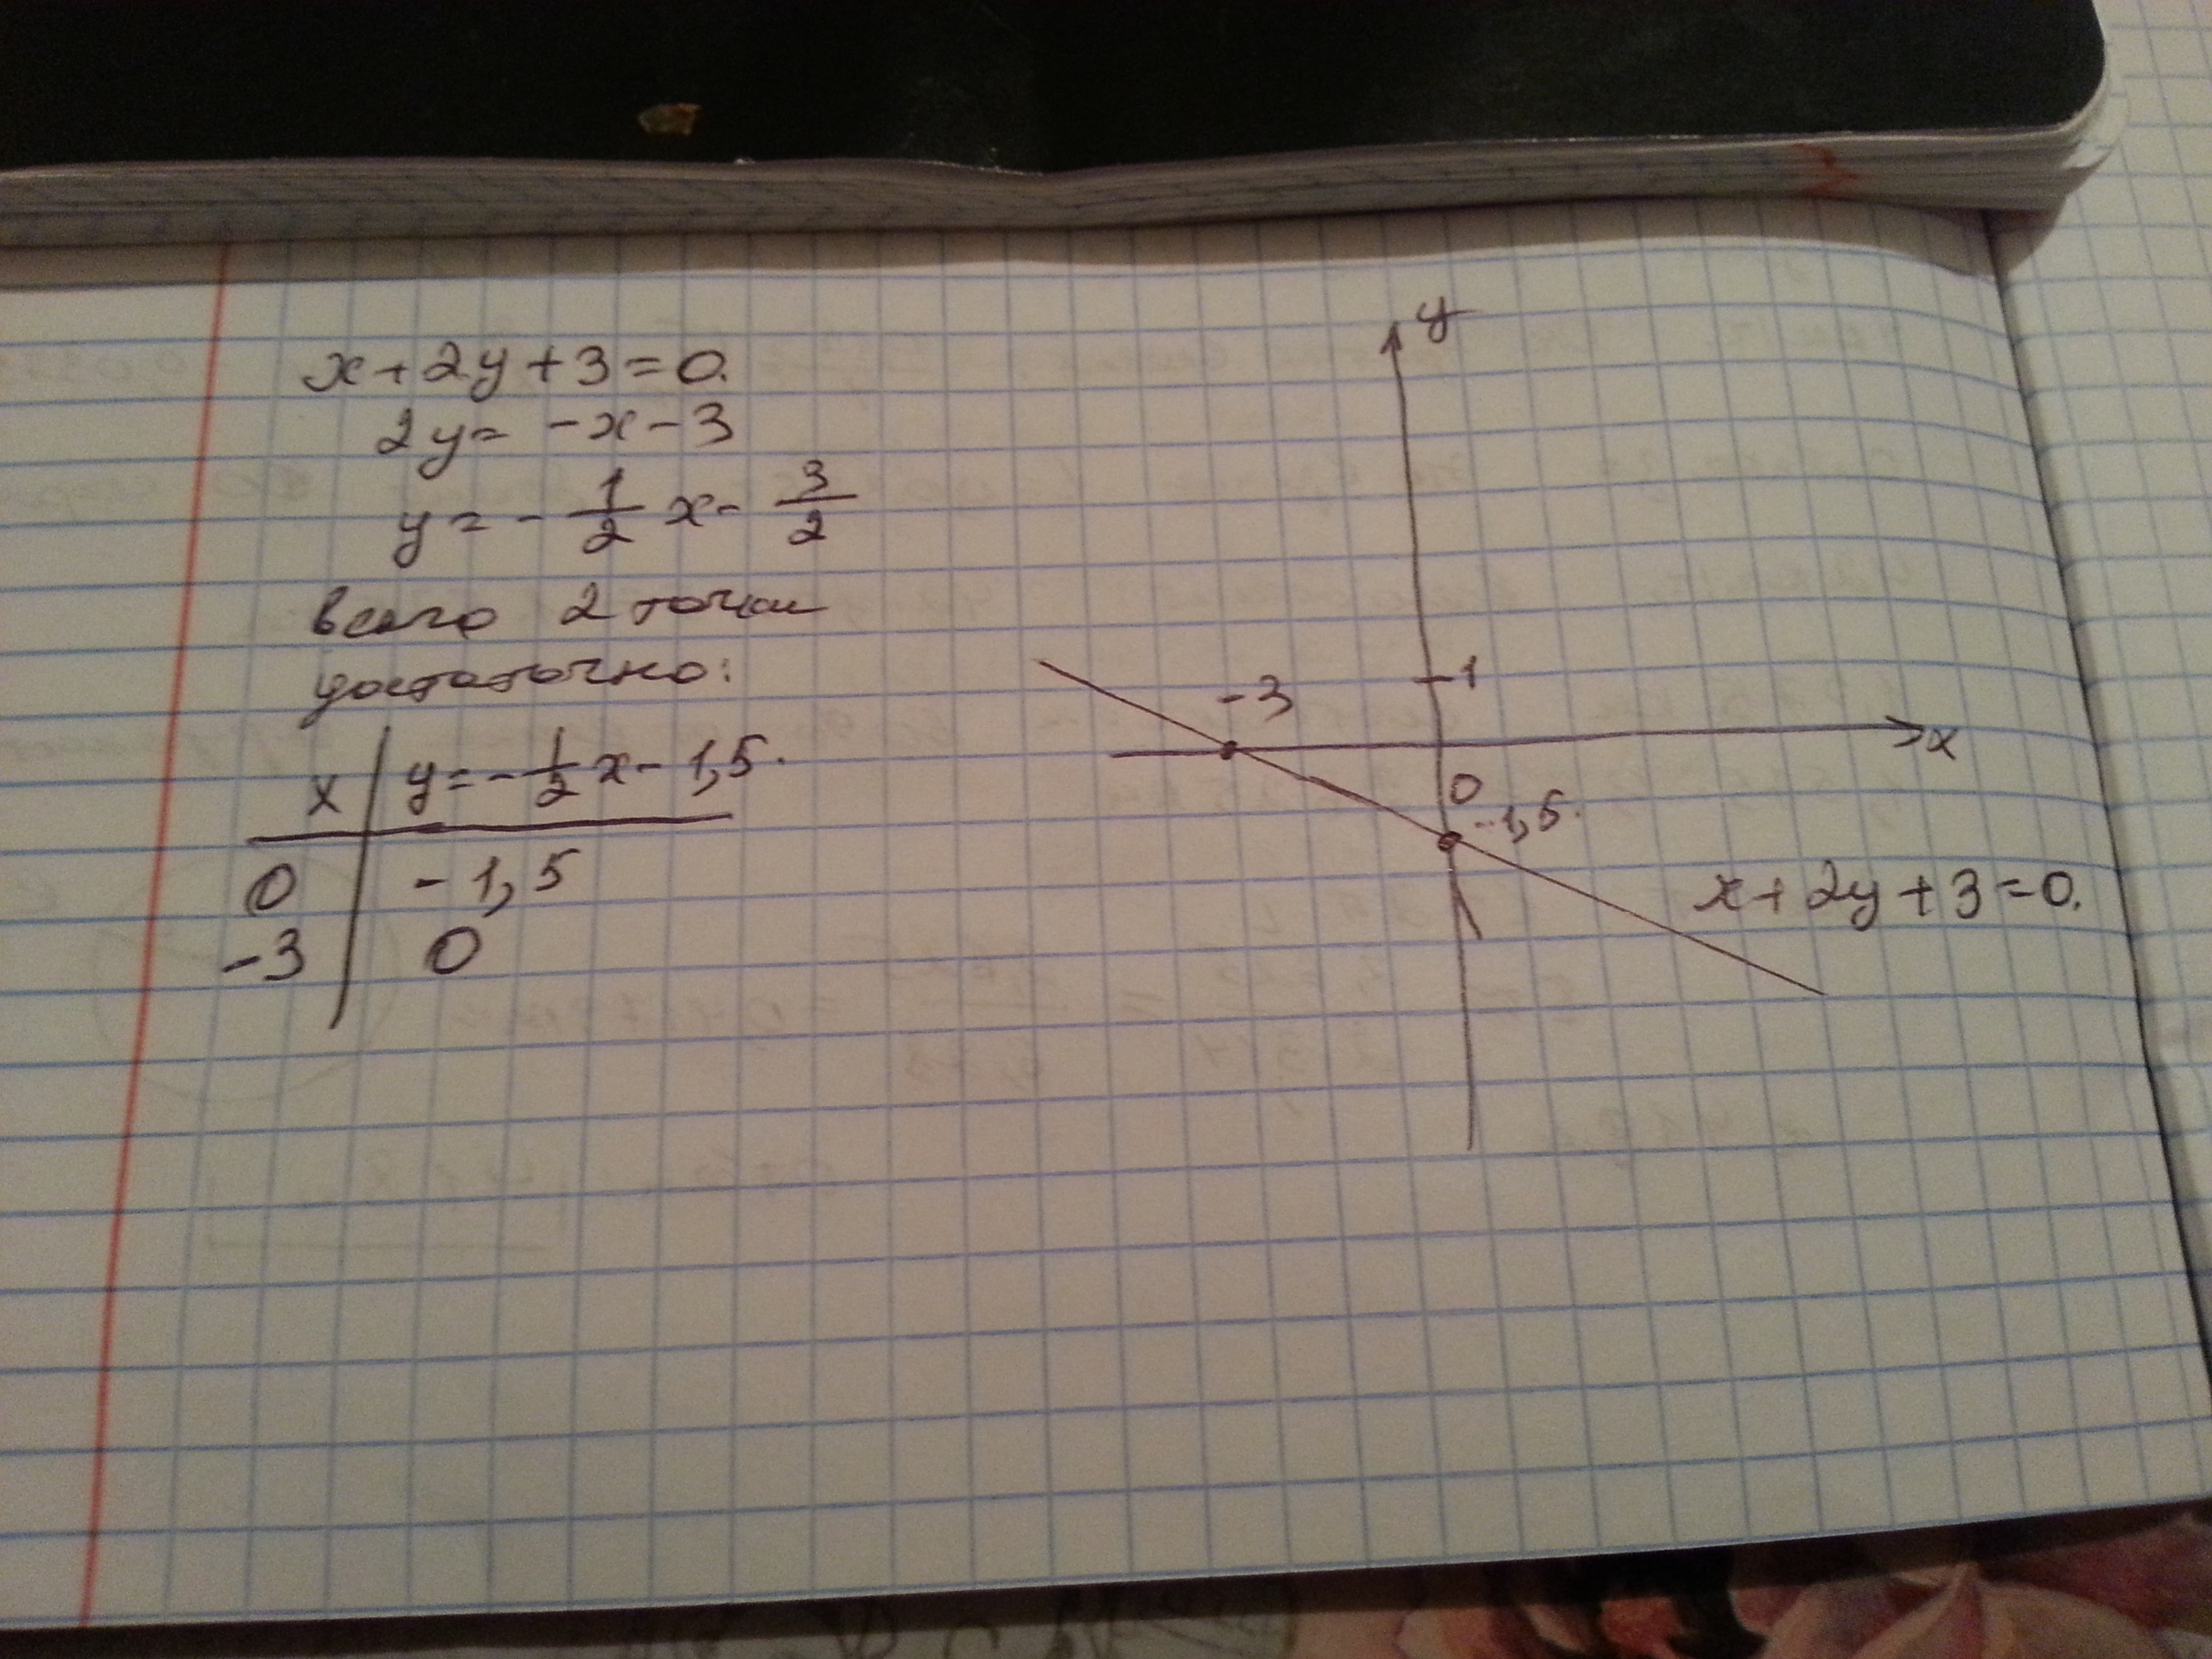 Постройте прямую у 2х 6. Построить прямую заданную уравнением. 3х+2=0. Начертите прямую заданную уравнением. Начертите прямую заданную уравнением у 3 х -2.